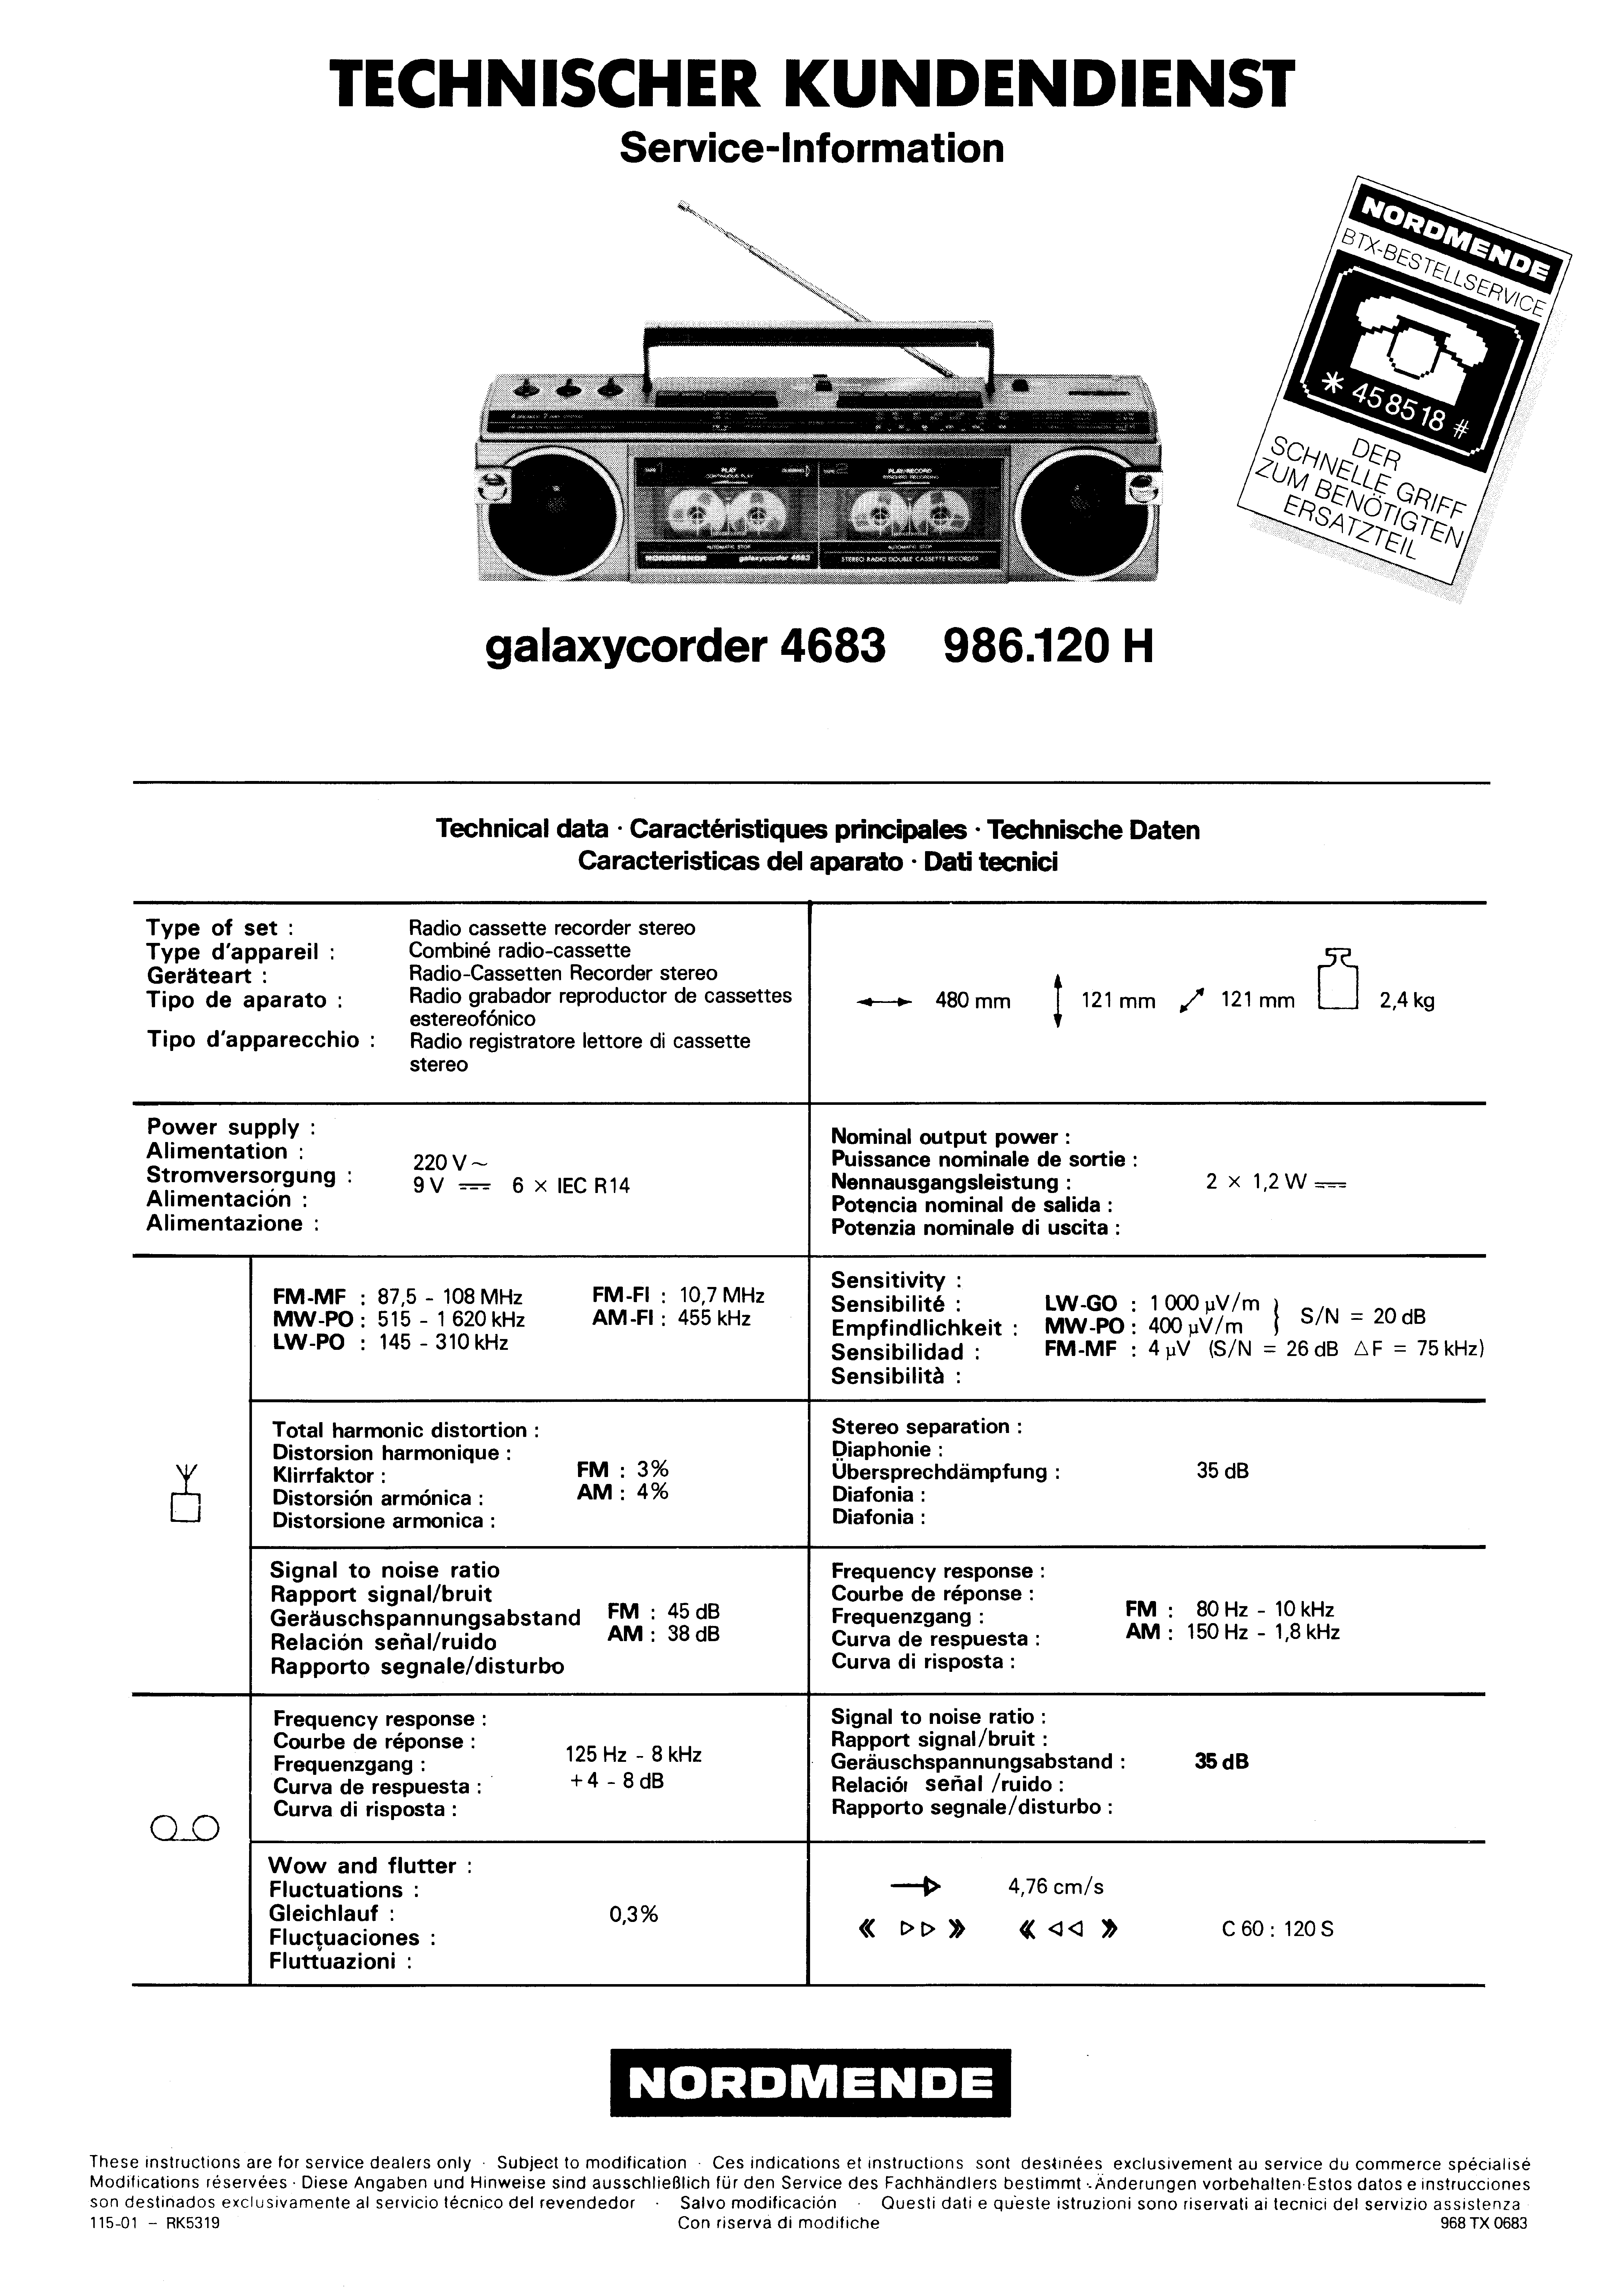 Nordmende Service Manual für Turandot-Rigoletto  2.614  Copy 